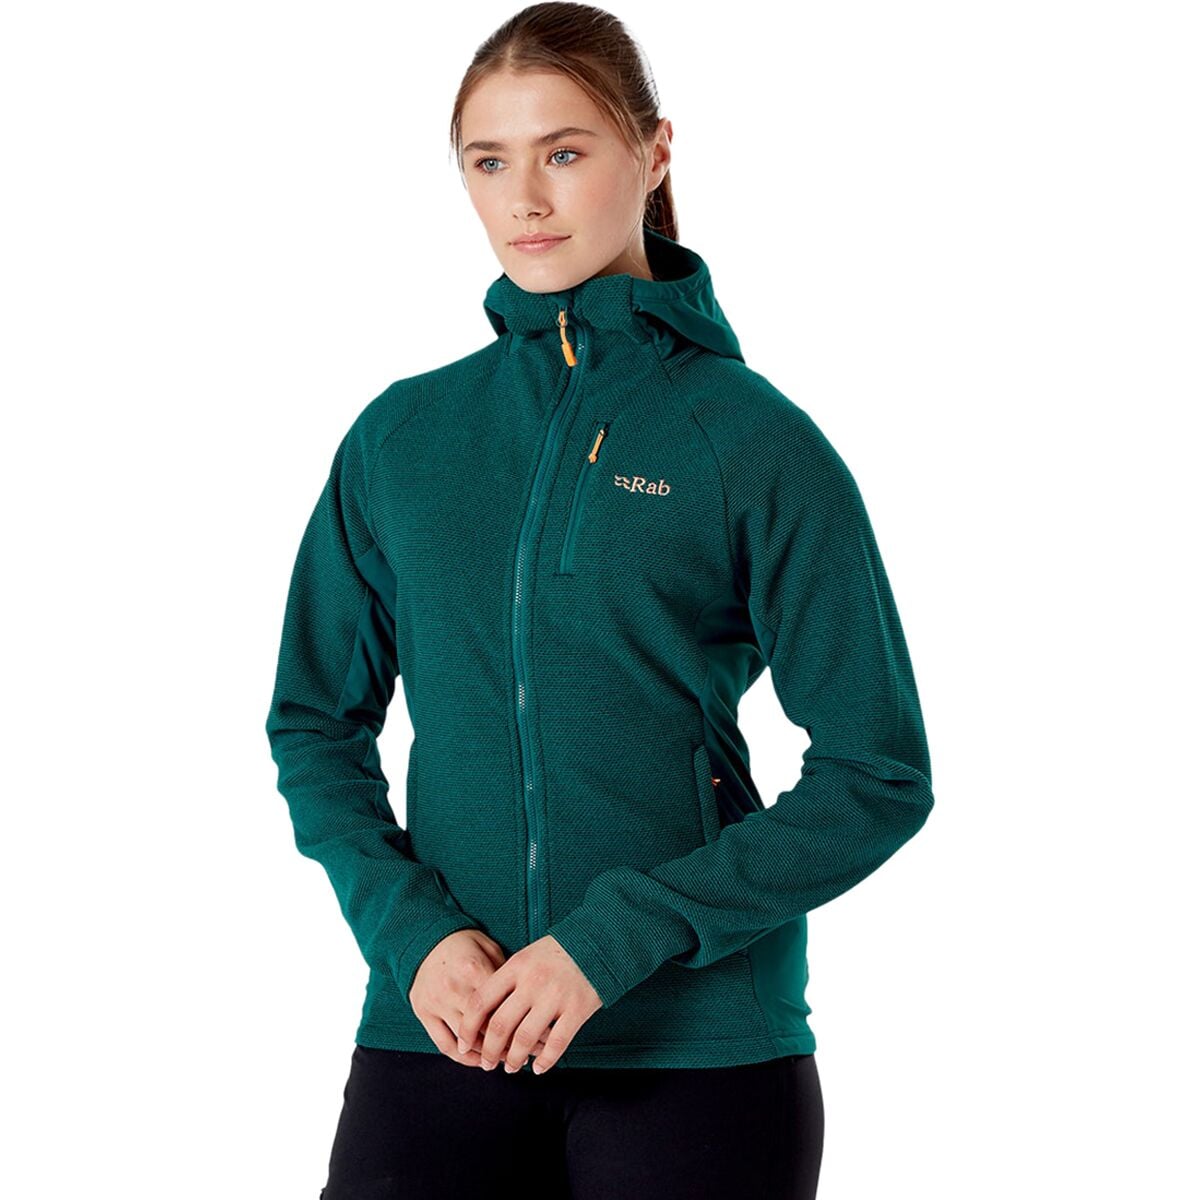 Rab Capacitor Hooded Fleece Jacket - Women's - Clothing